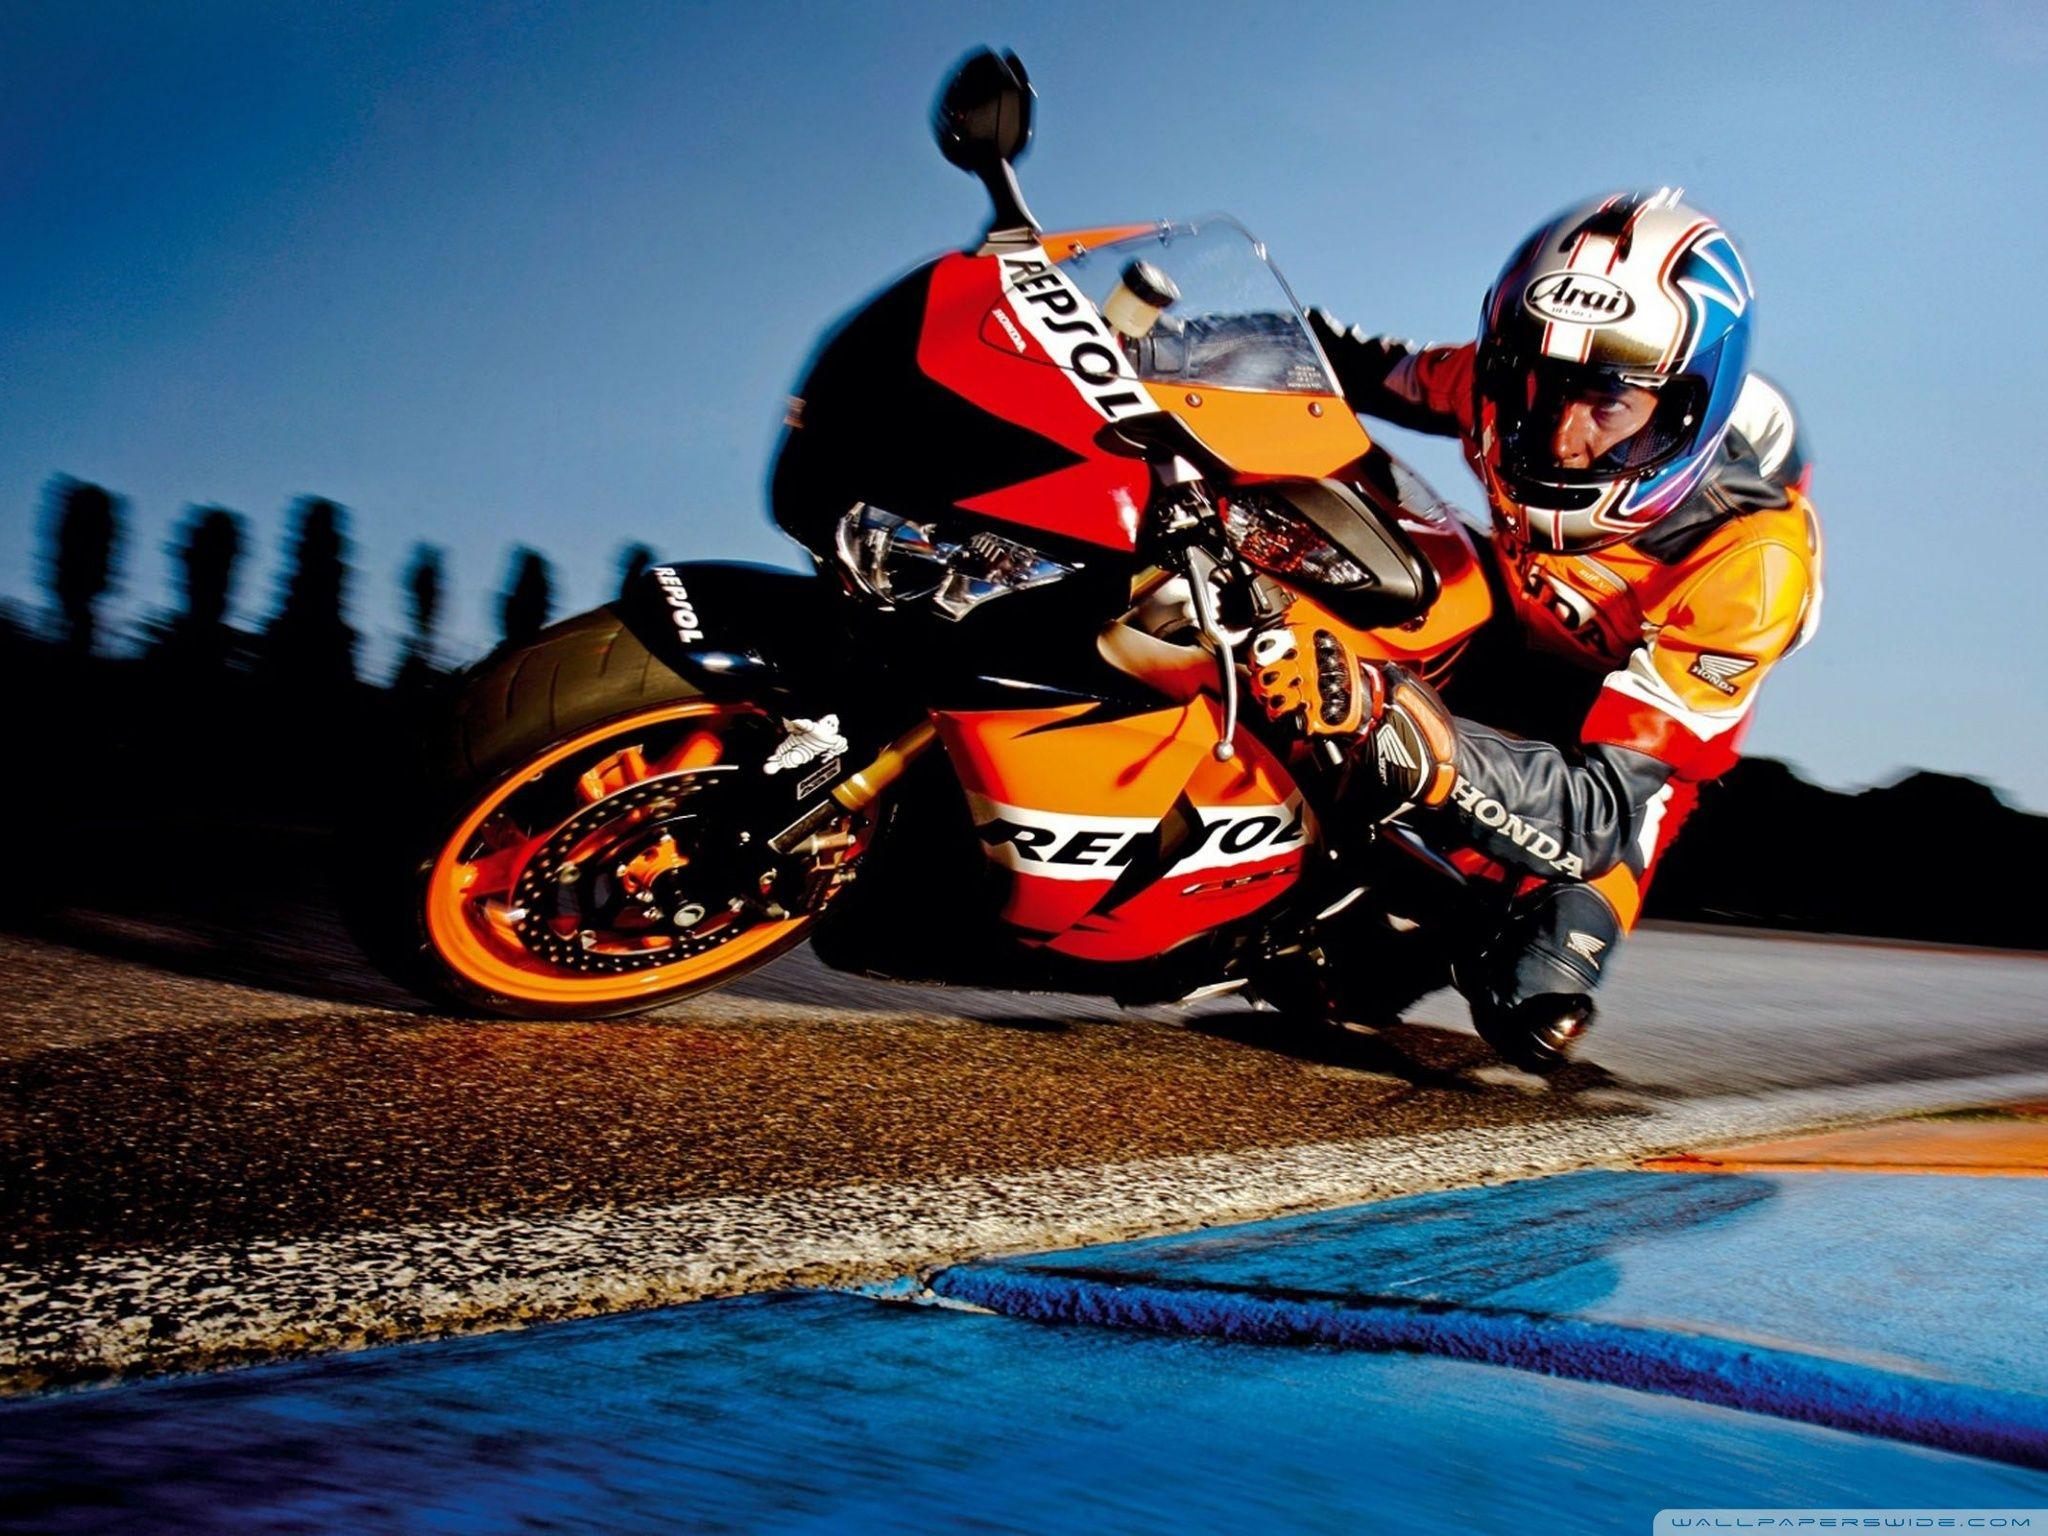 Honda Sport Motorcycle Wallpapers Top Free Honda Sport Motorcycle Backgrounds Wallpaperaccess 0376